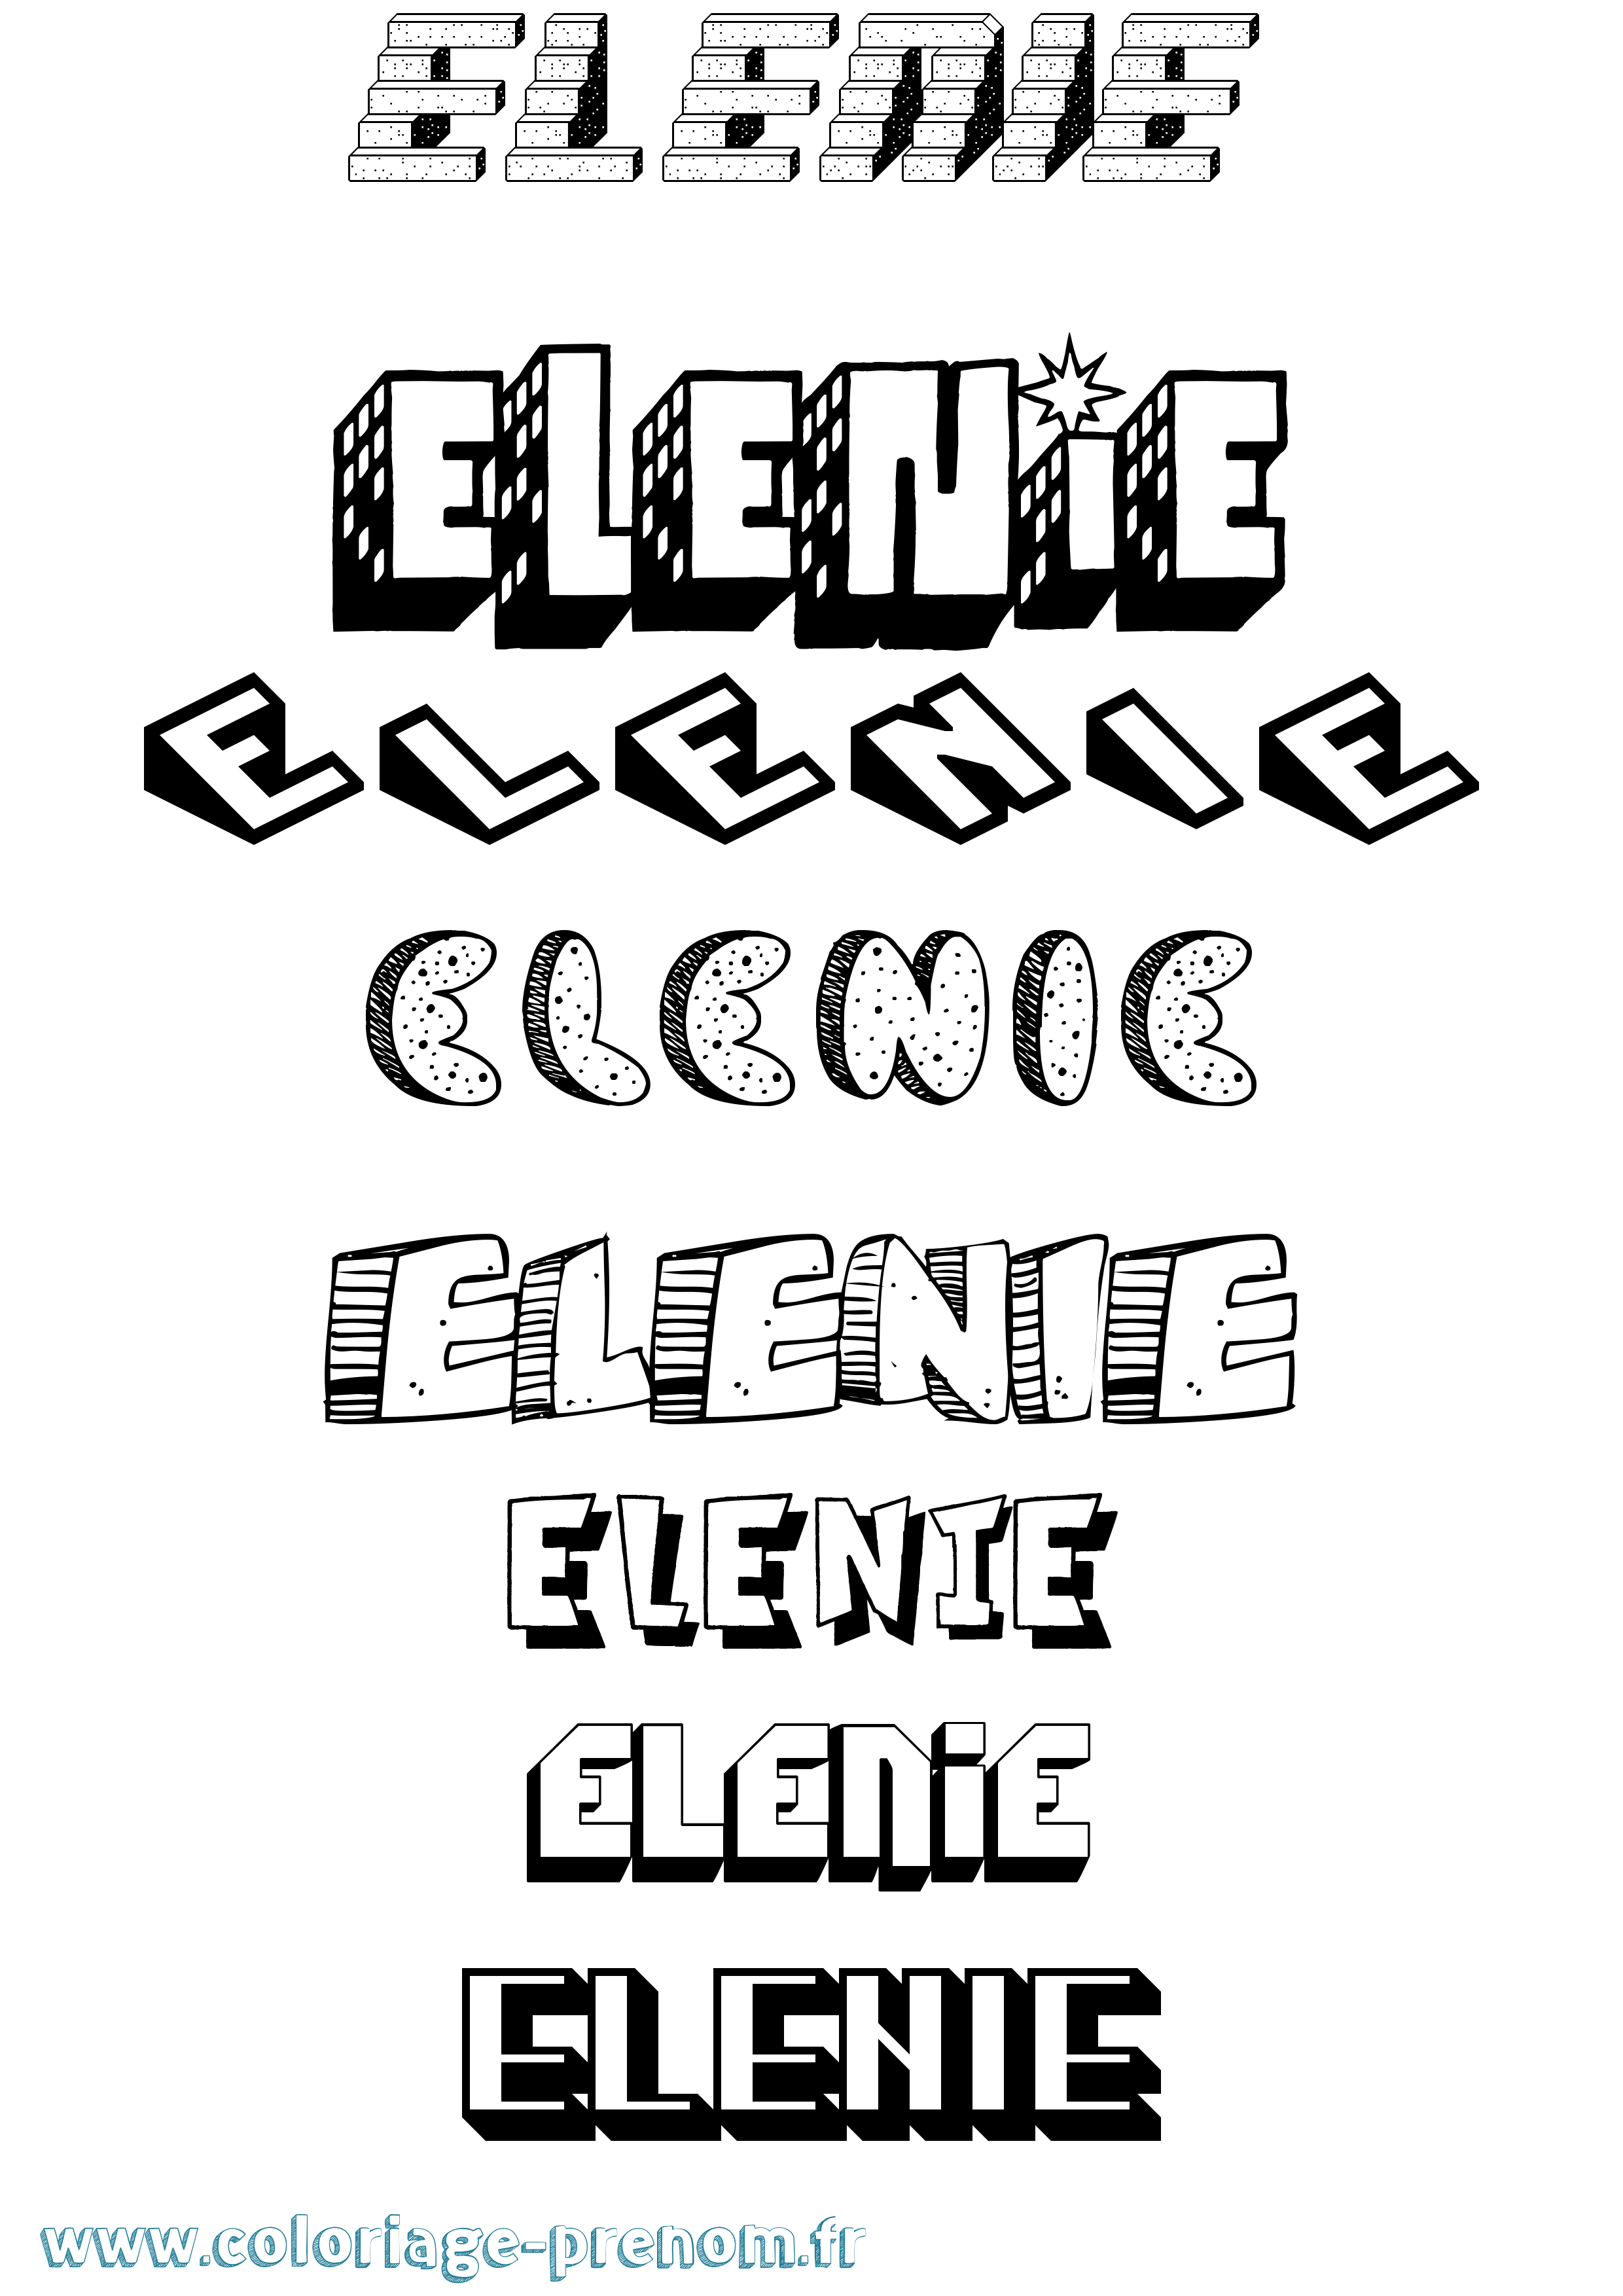 Coloriage prénom Elenie Effet 3D